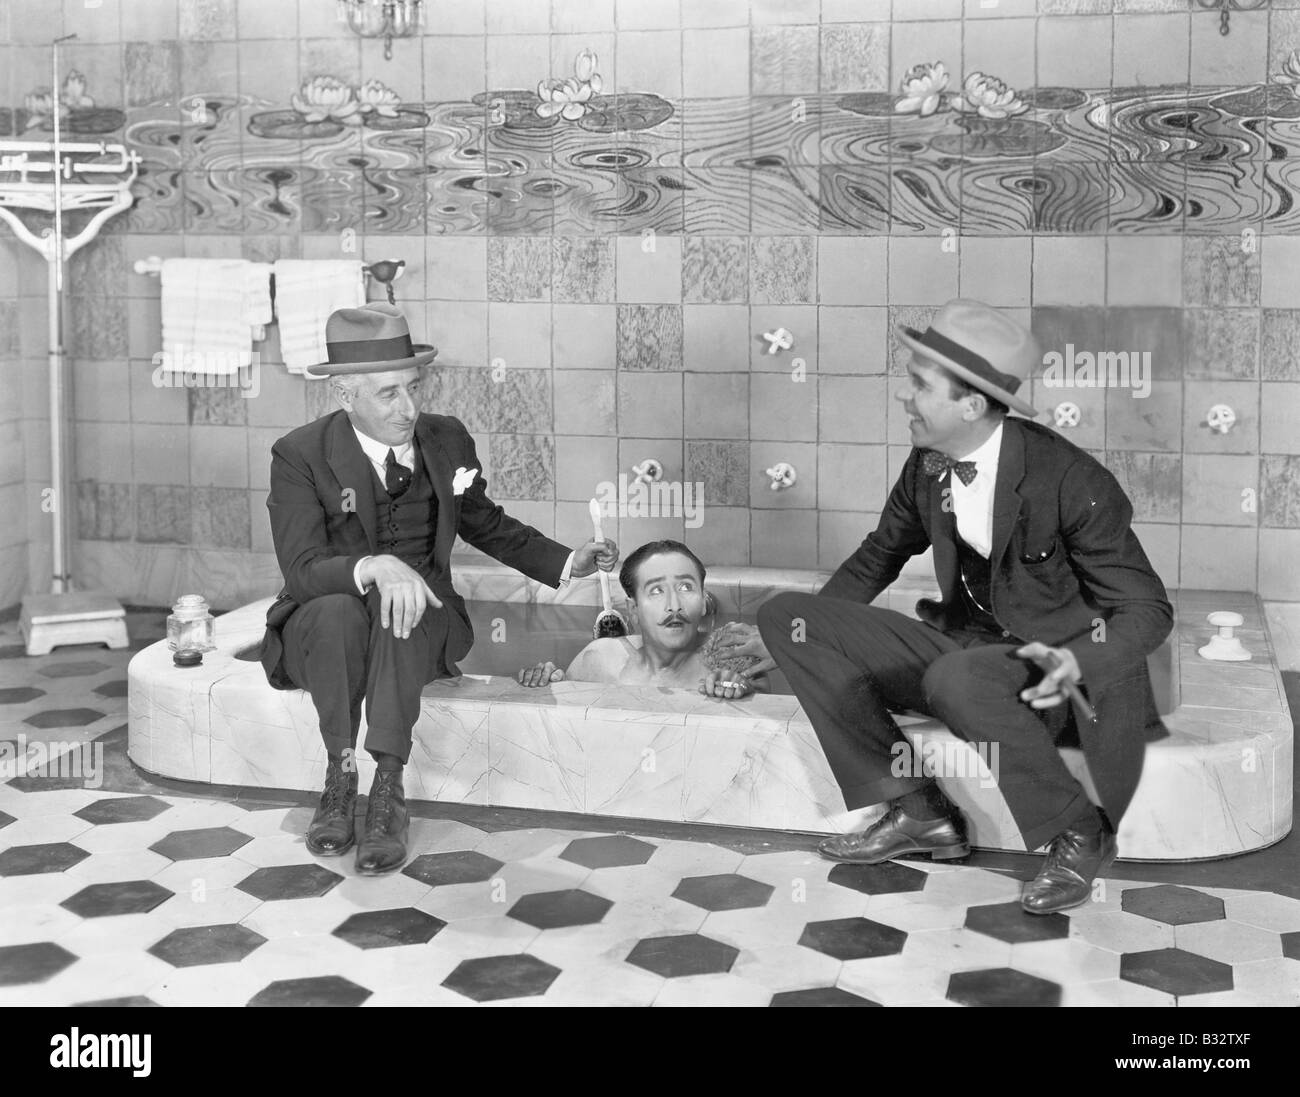 Zwei Männer sitzen am Rand der Badewanne in Anzügen und schrubben eine Freunde zurück Stockfoto